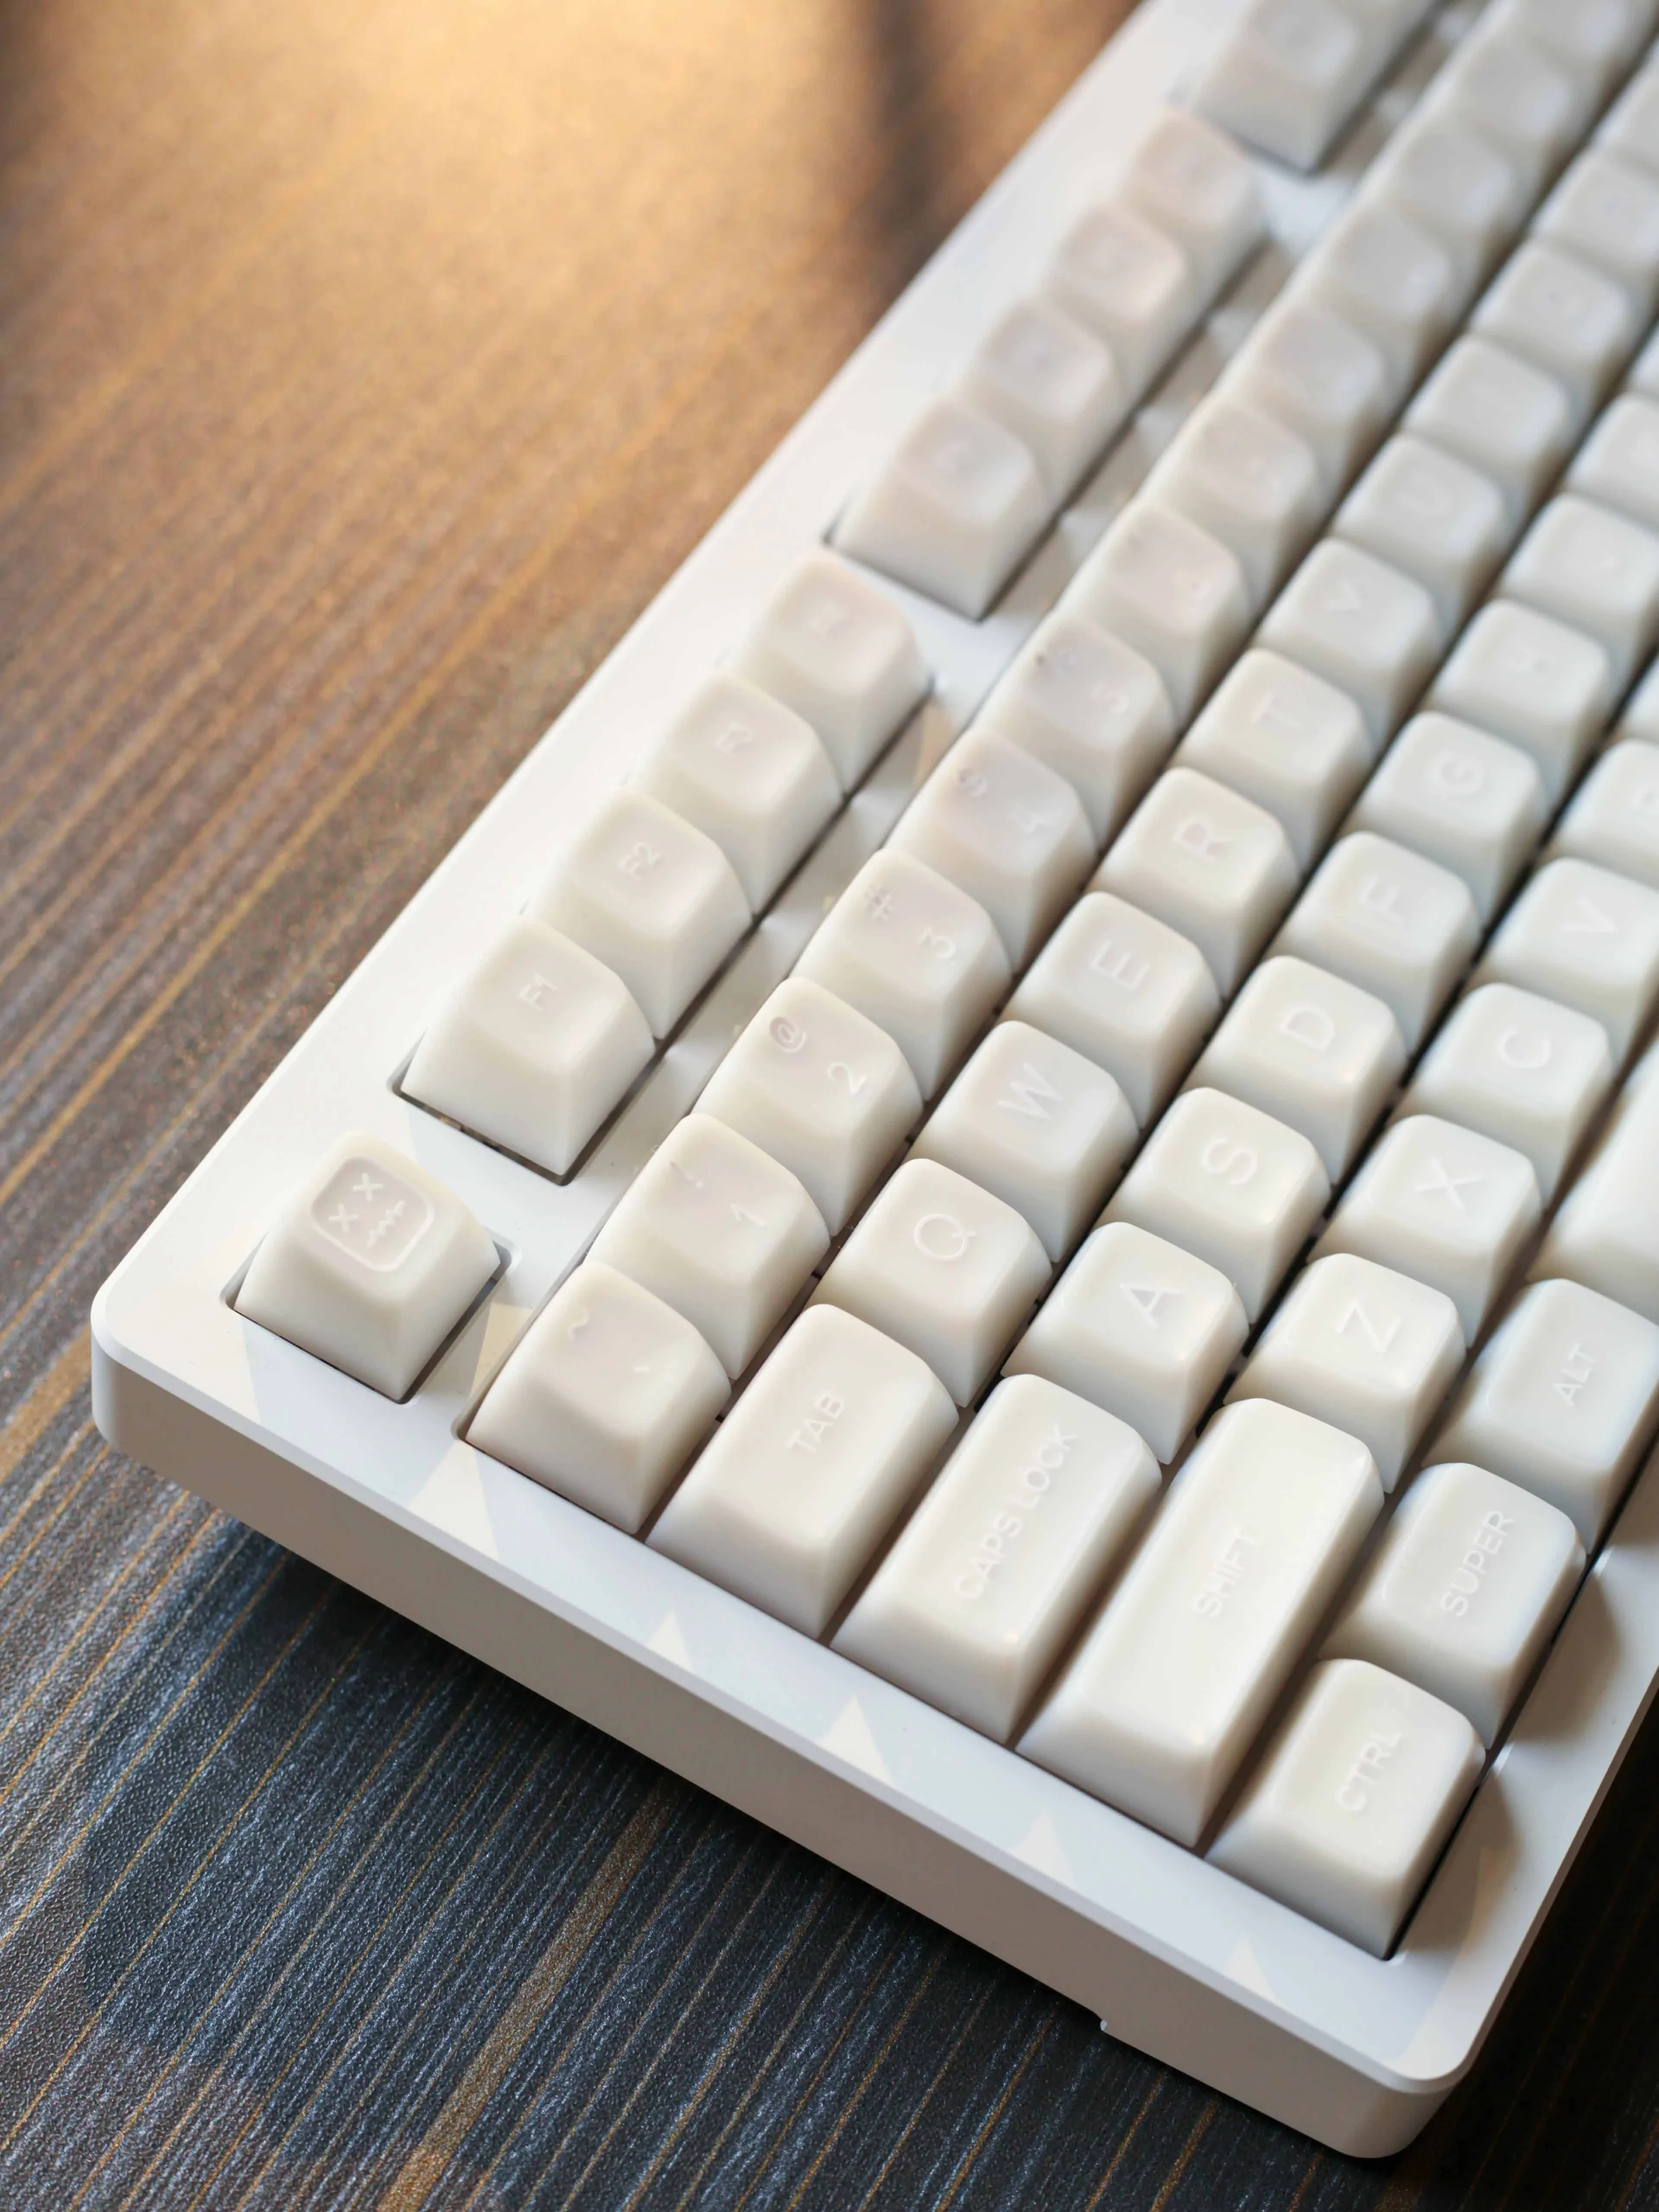 142 tasti Keycap a tema giada bianca Pbt Dye-Sublimation Keyboard Cap traslucido Custom Sa Profile Key Cap per tastiera meccanica